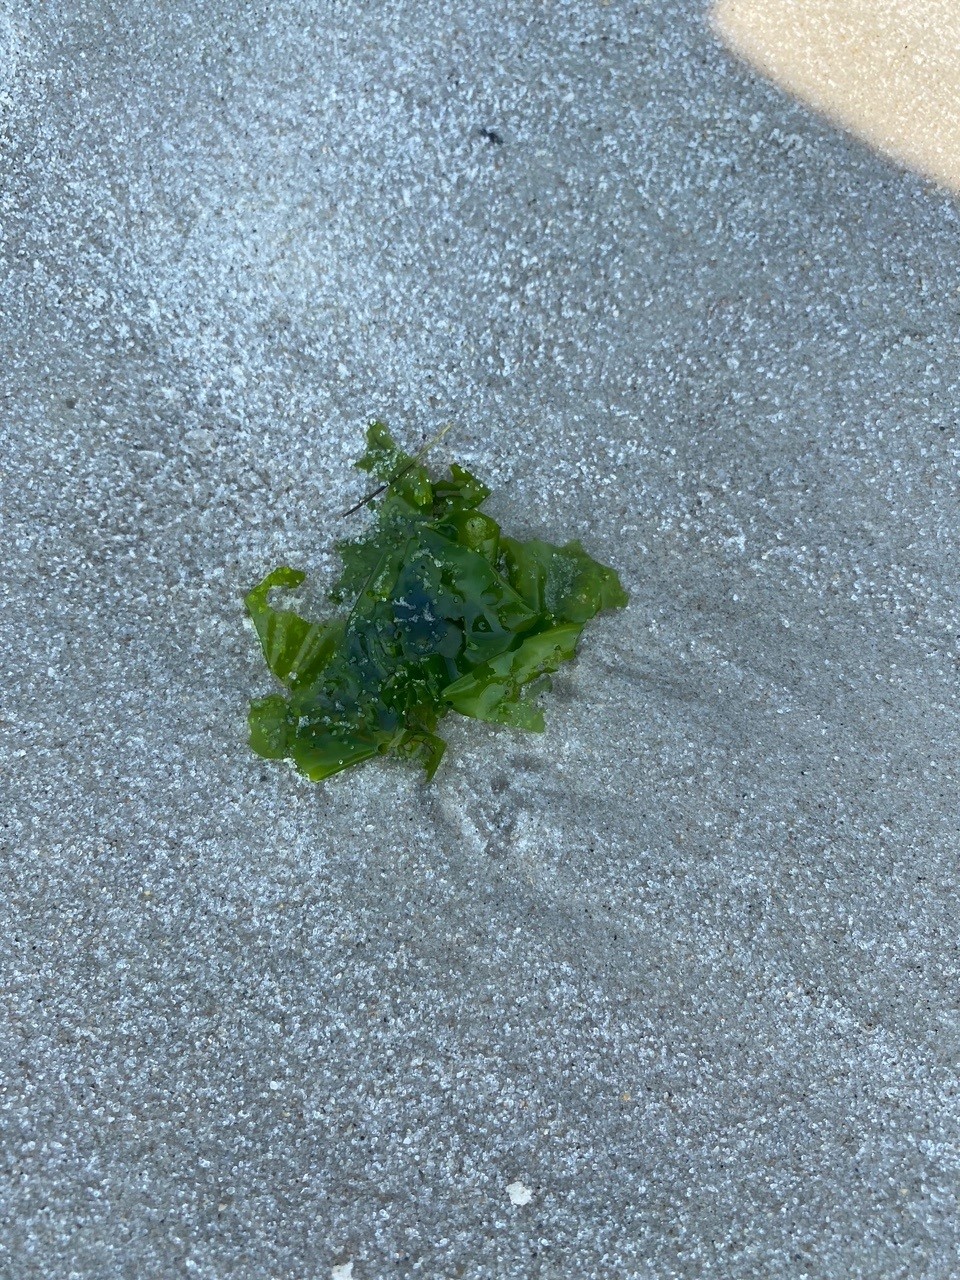 sea weed